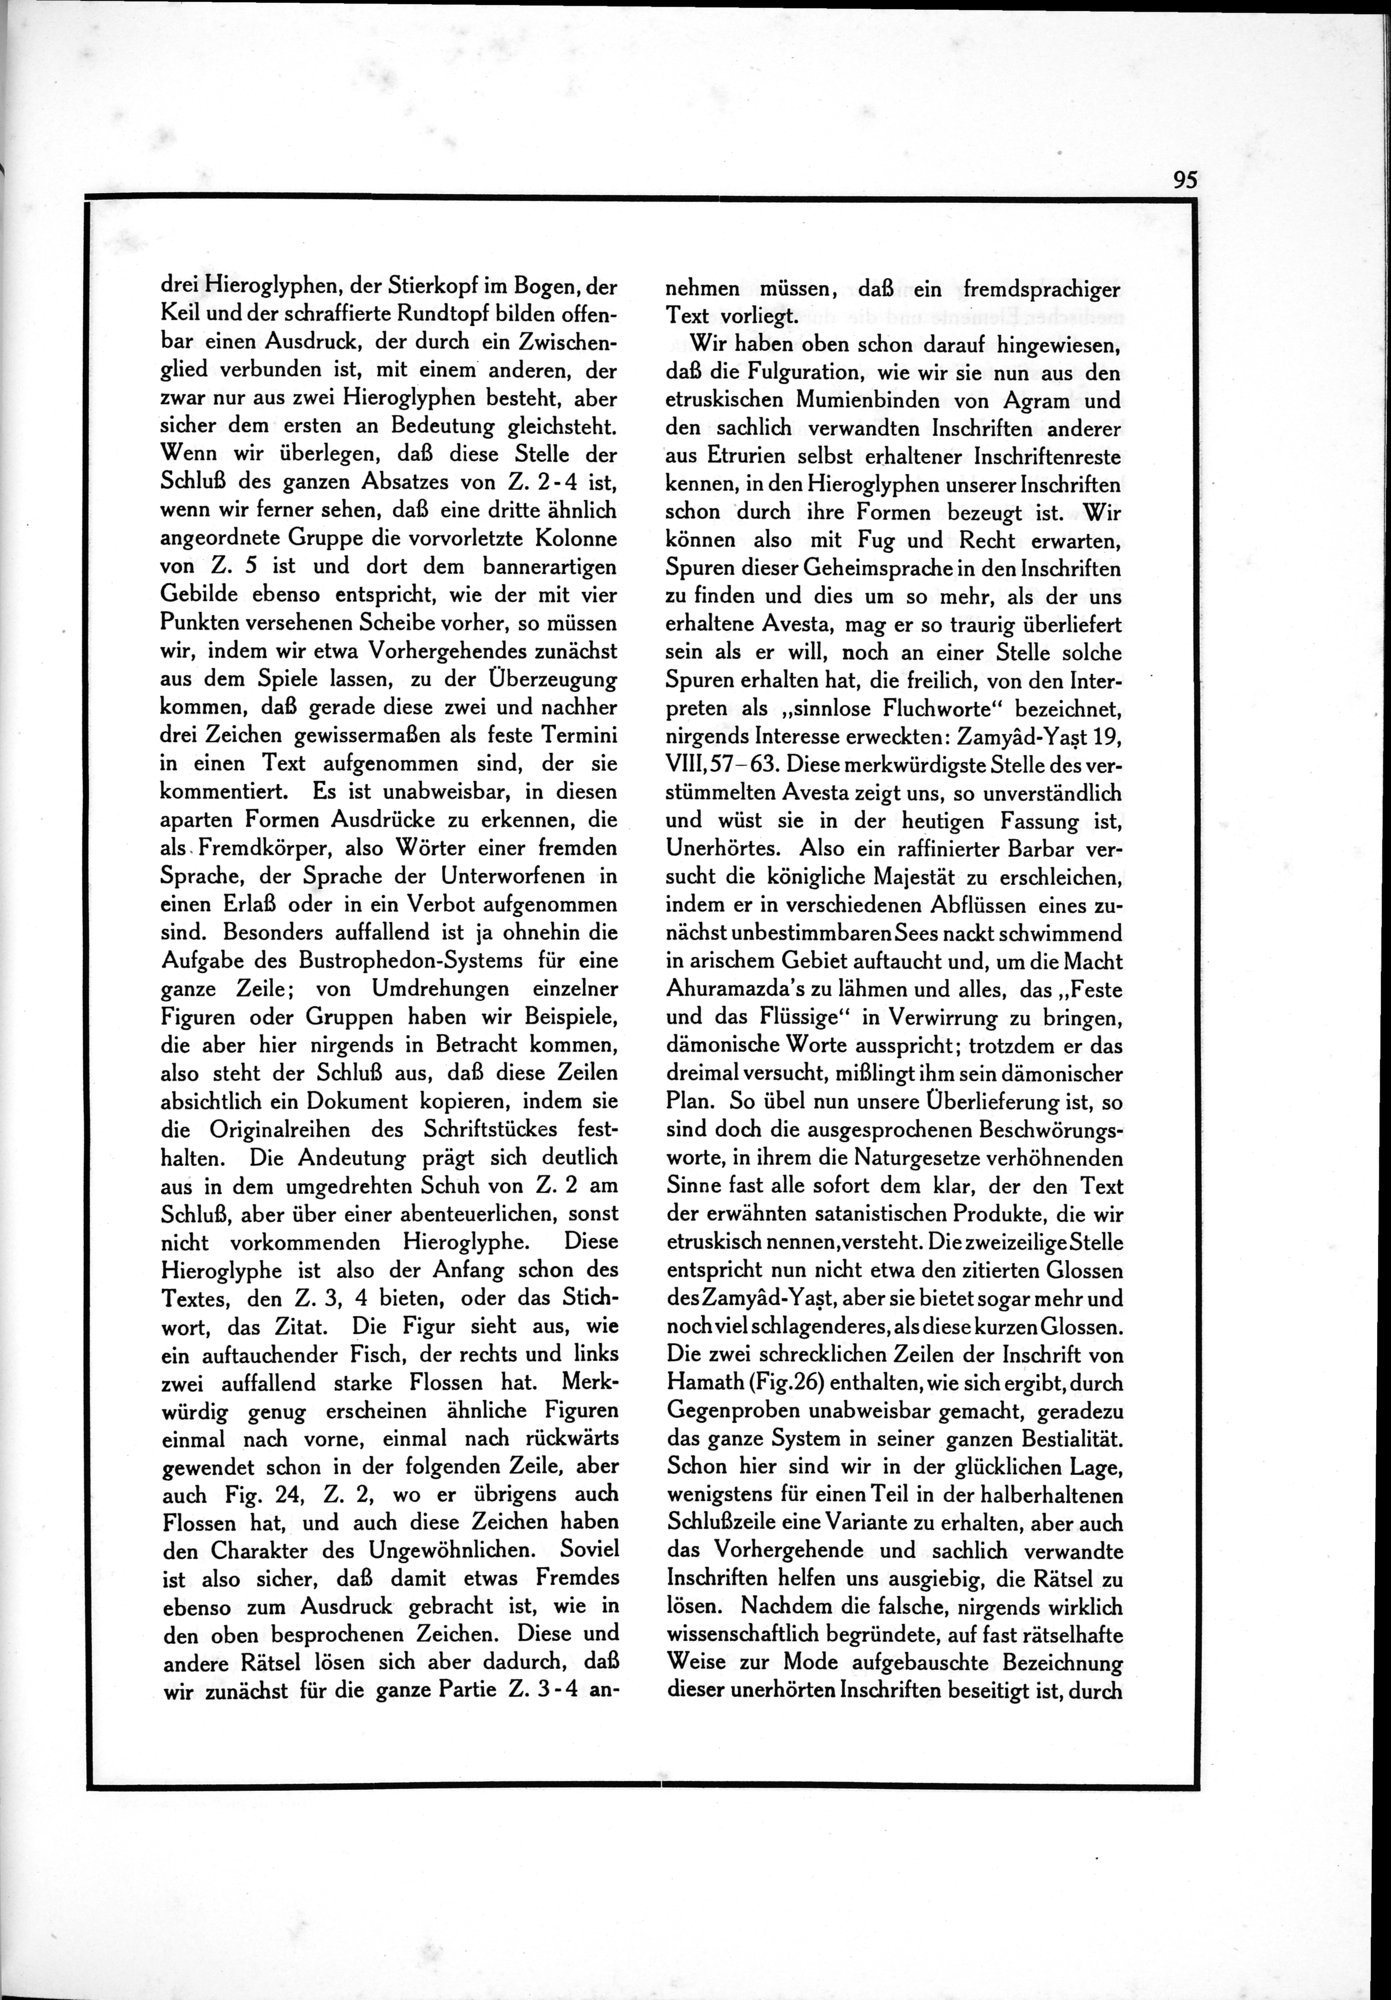 Die Teufel des Avesta und Ihre Beziehungen zur Ikonographie des Buddhismus Zentral-Asiens : vol.1 / Page 99 (Grayscale High Resolution Image)